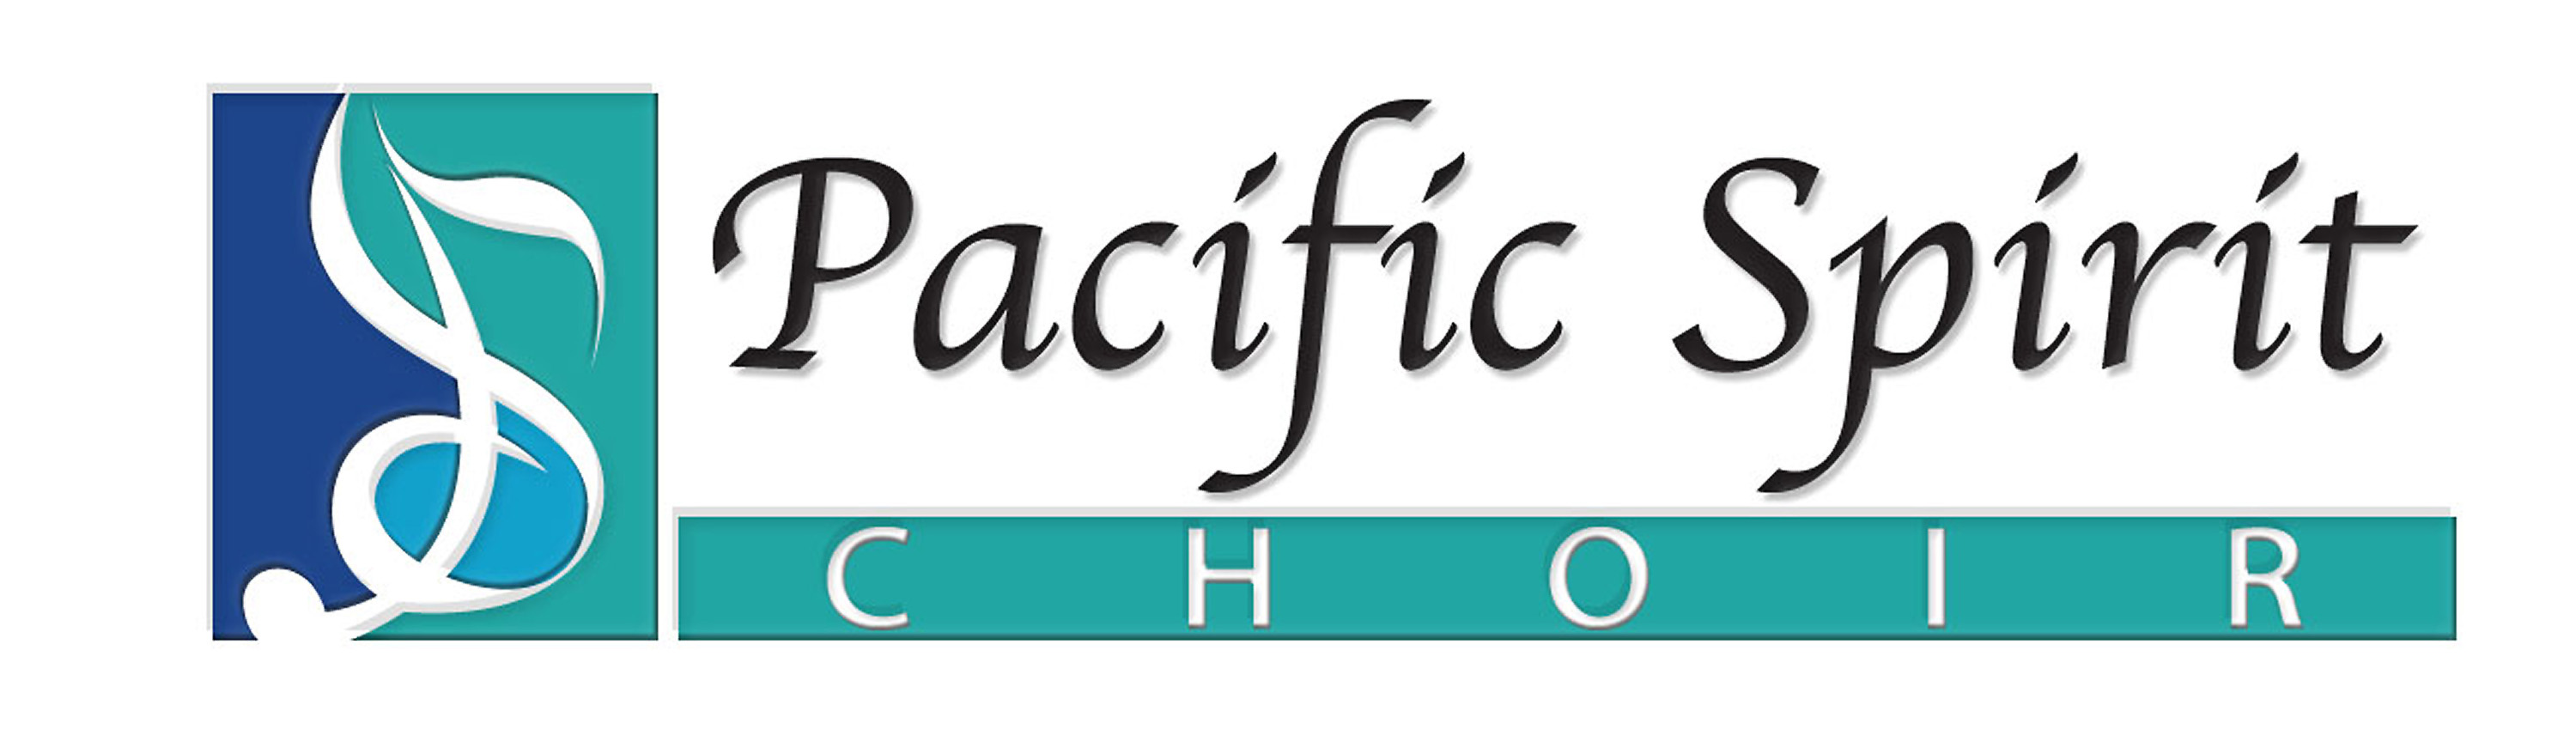 Pacific Spirit Choir logo